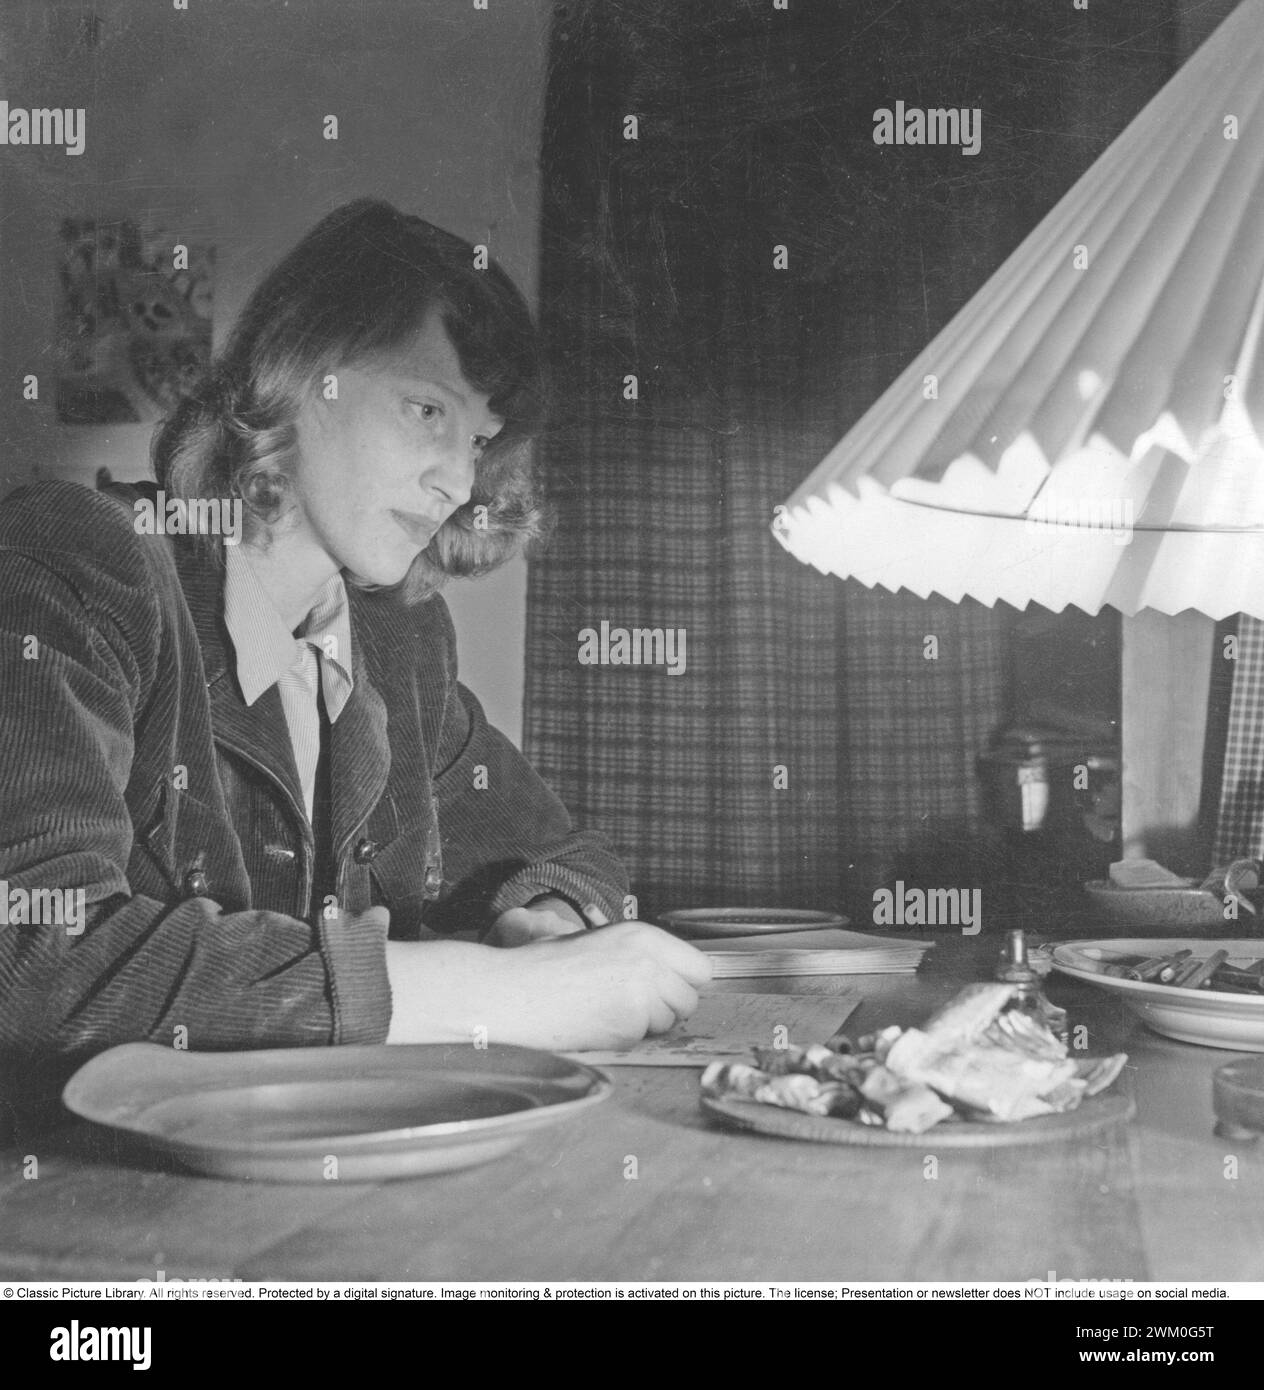 Ingrid Vang Nyman (* 21. August 1916 – 13. Dezember 1959) war eine dänische Illustratorin, die für ihre Arbeit an den Pippi Langstrumpfbüchern bekannt war. Astrid Lindgren war Autor der Bücher über Pippi Langstrumpf. 1945 *** Lokale Beschriftung *** Stockfoto